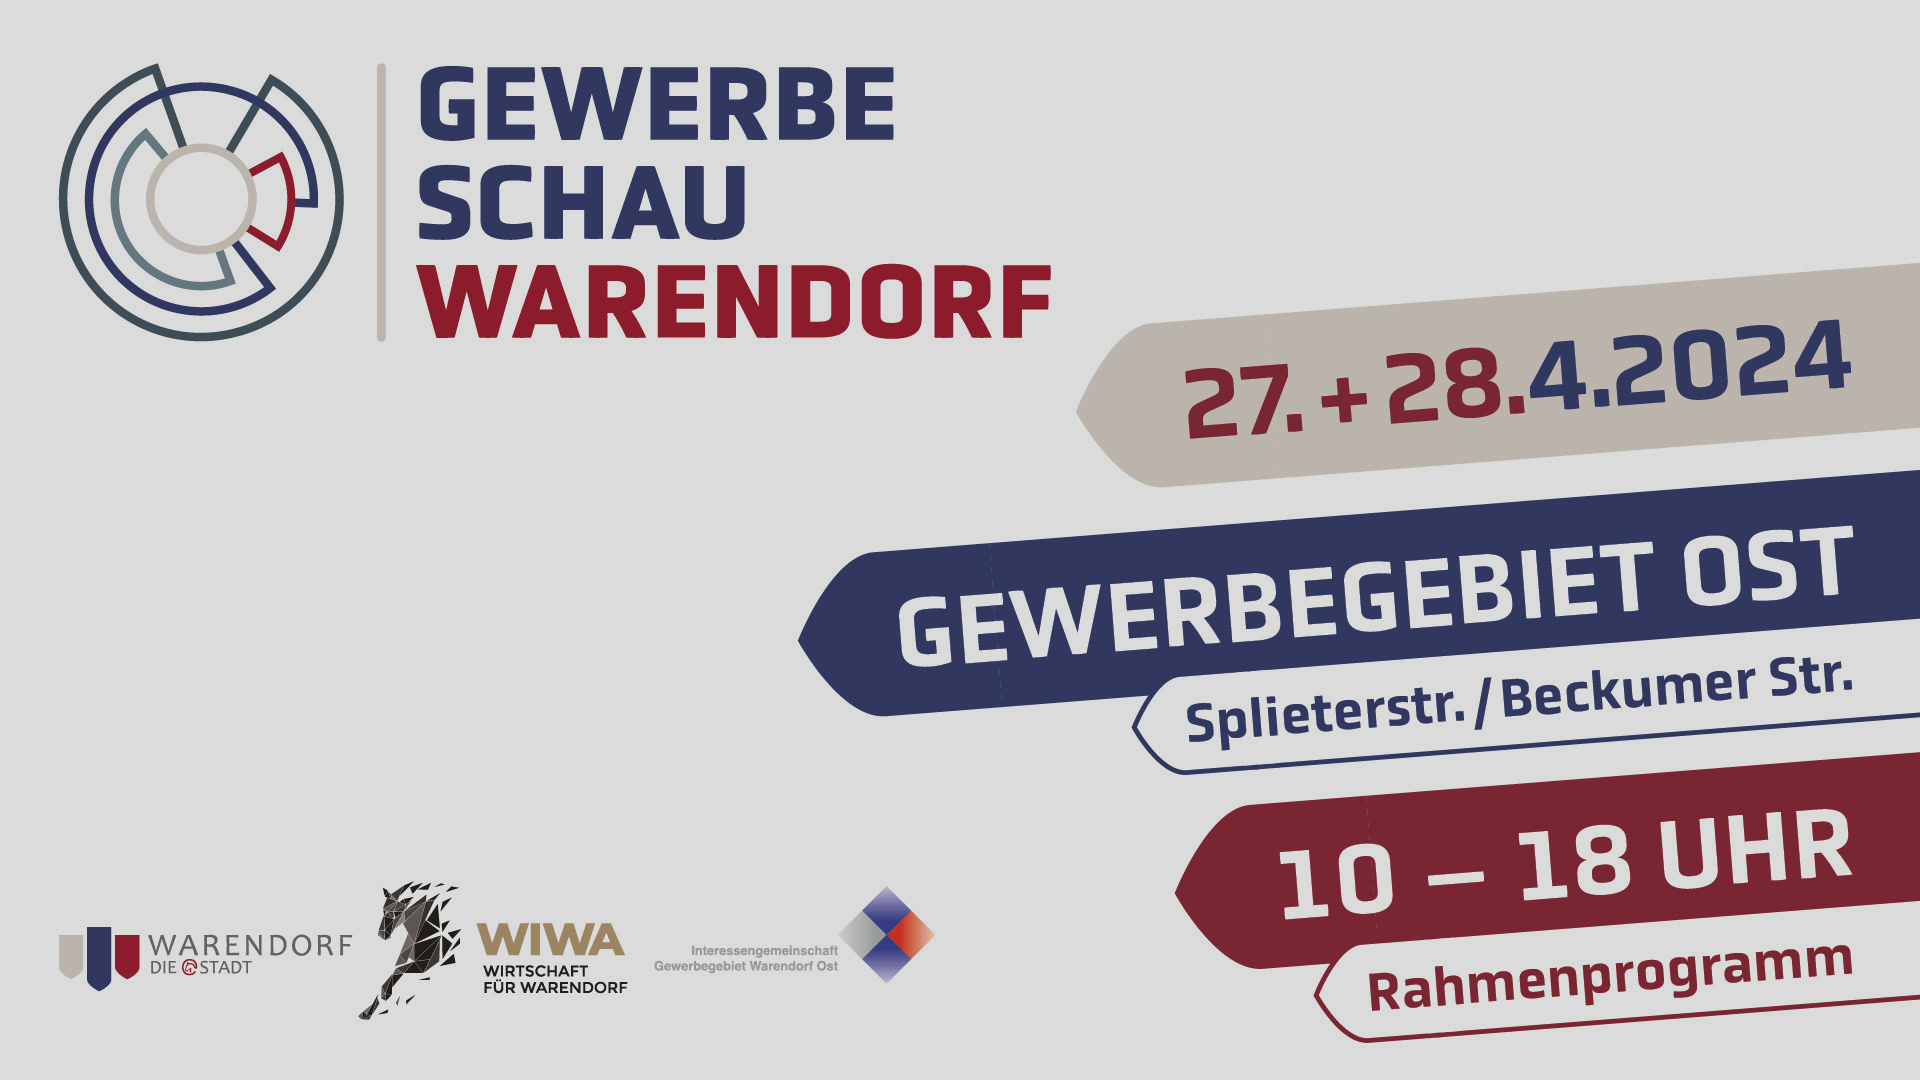 Programm Banner der Gewerbeschau Warendorf 2024 vom 27.04. bis 28.04.2024 im Gewerbegebiet Ost Splieterstr./Beckumer Str. von 10 - 18 Uhr